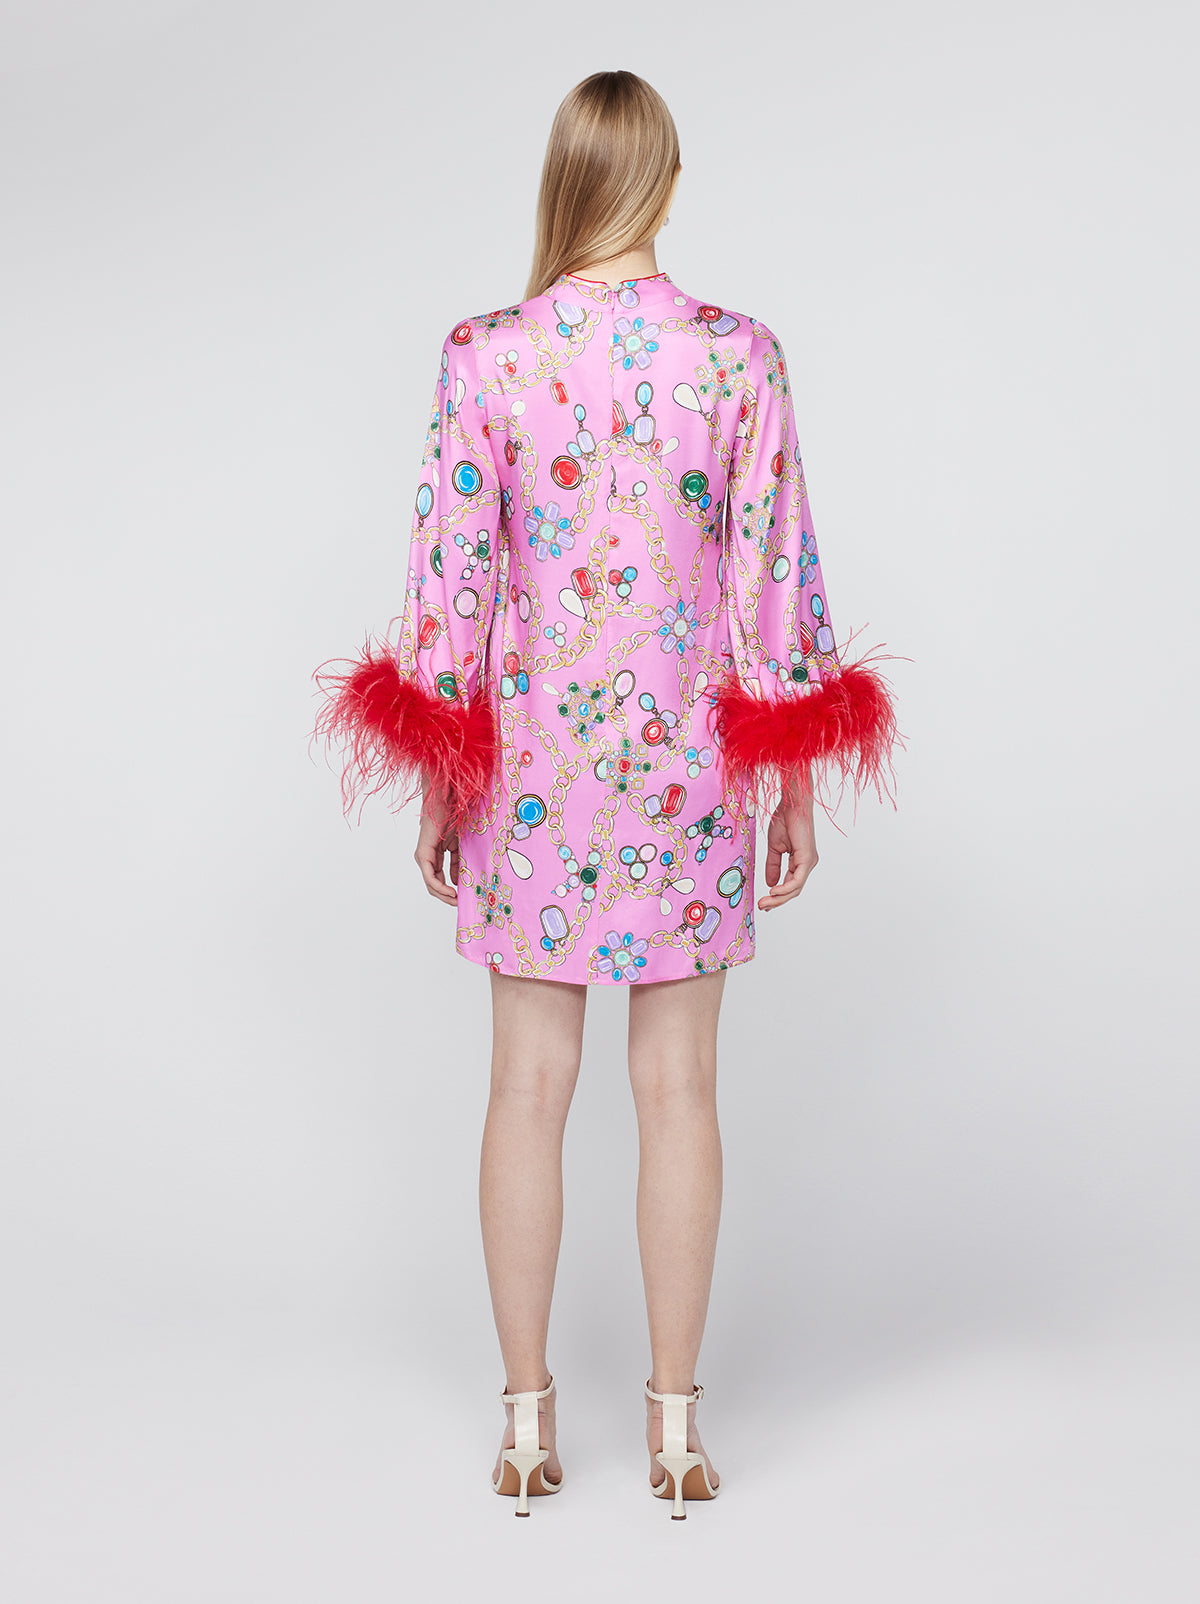 Carlotta Pink Chain Print Mini Dress By KITRI Studio